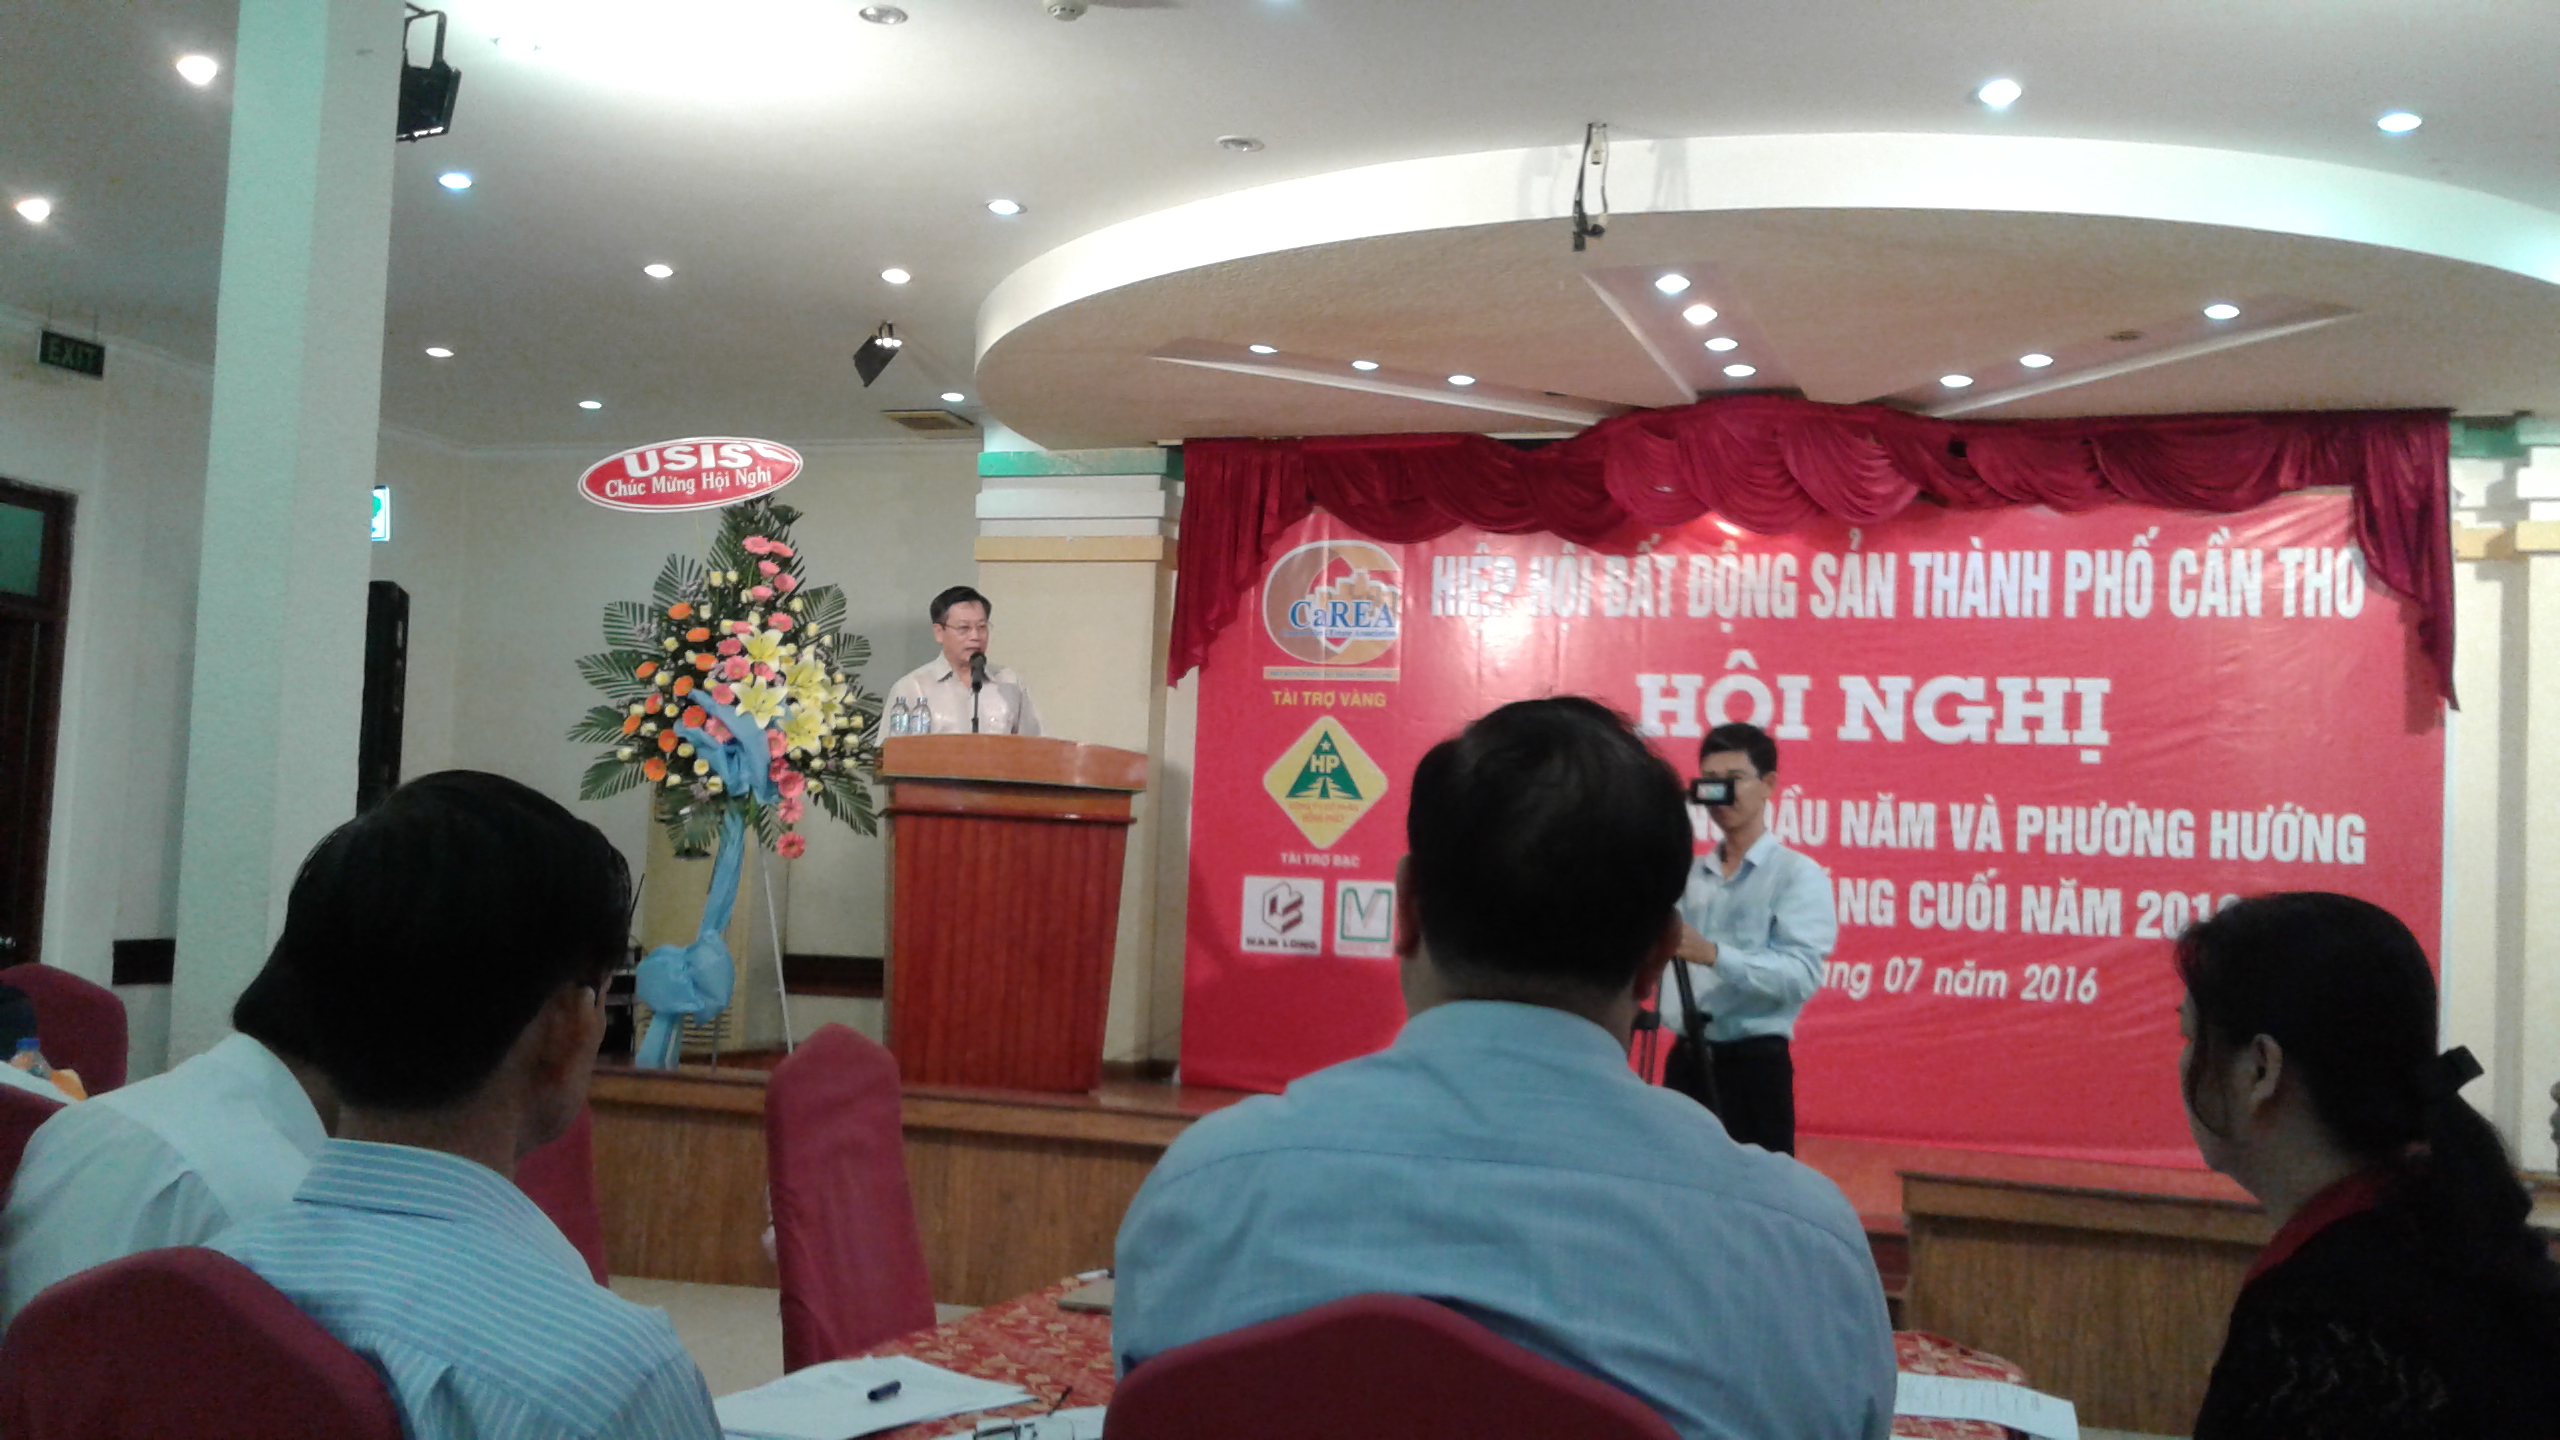 Ông Trần Ngọc Quang, Tổng thư kí Hiệp hội bất động sản Việt Nam phát biểu tại Hội nghị.